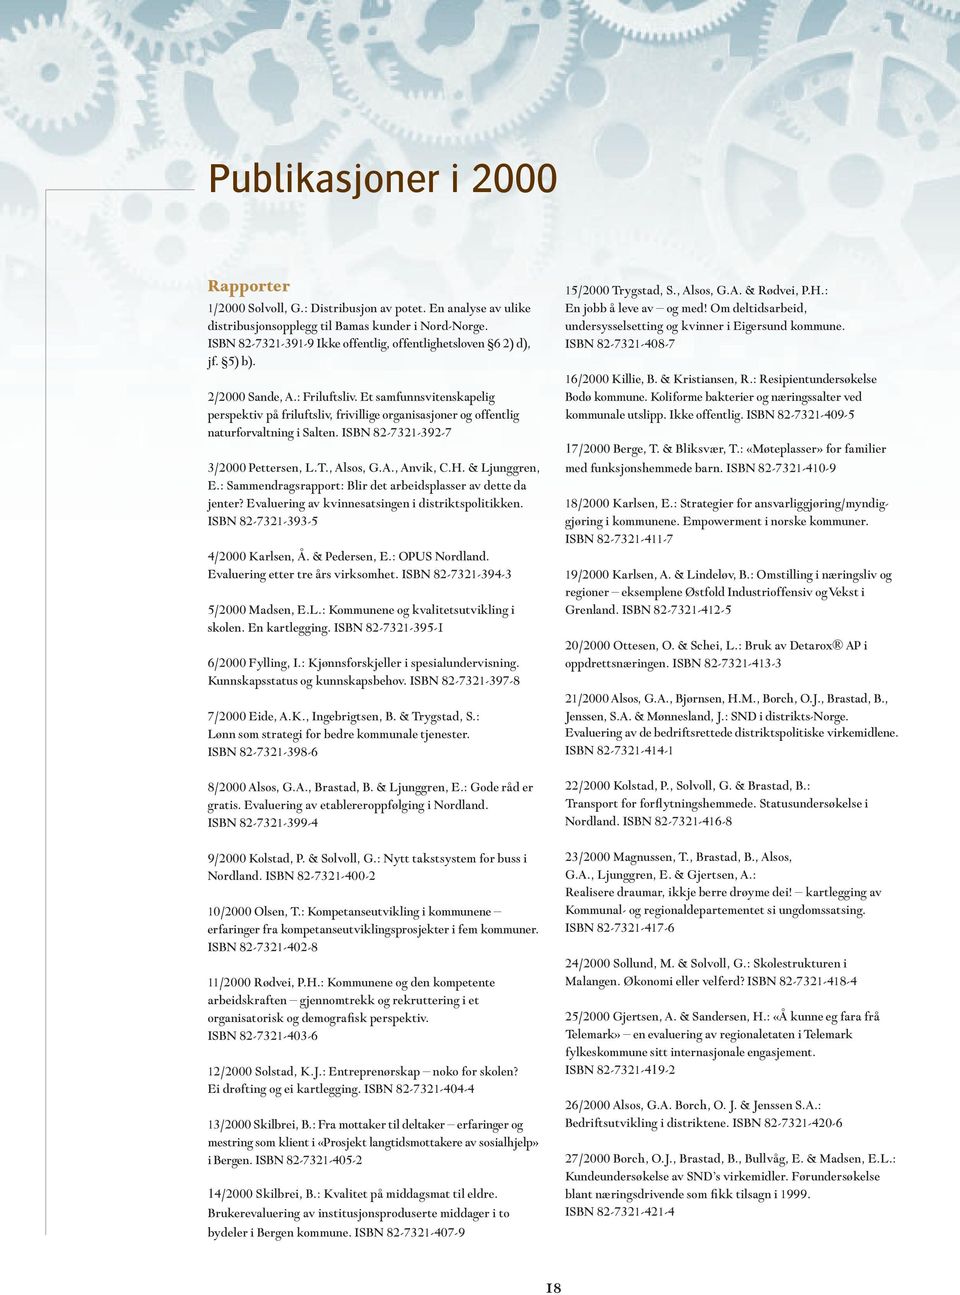 Et samfunnsvitenskapelig perspektiv på friluftsliv, frivillige organisasjoner og offentlig naturforvaltning i Salten. ISBN 82-7321-392-7 3/2000 Pettersen, L.T., Alsos, G.A., Anvik, C.H.